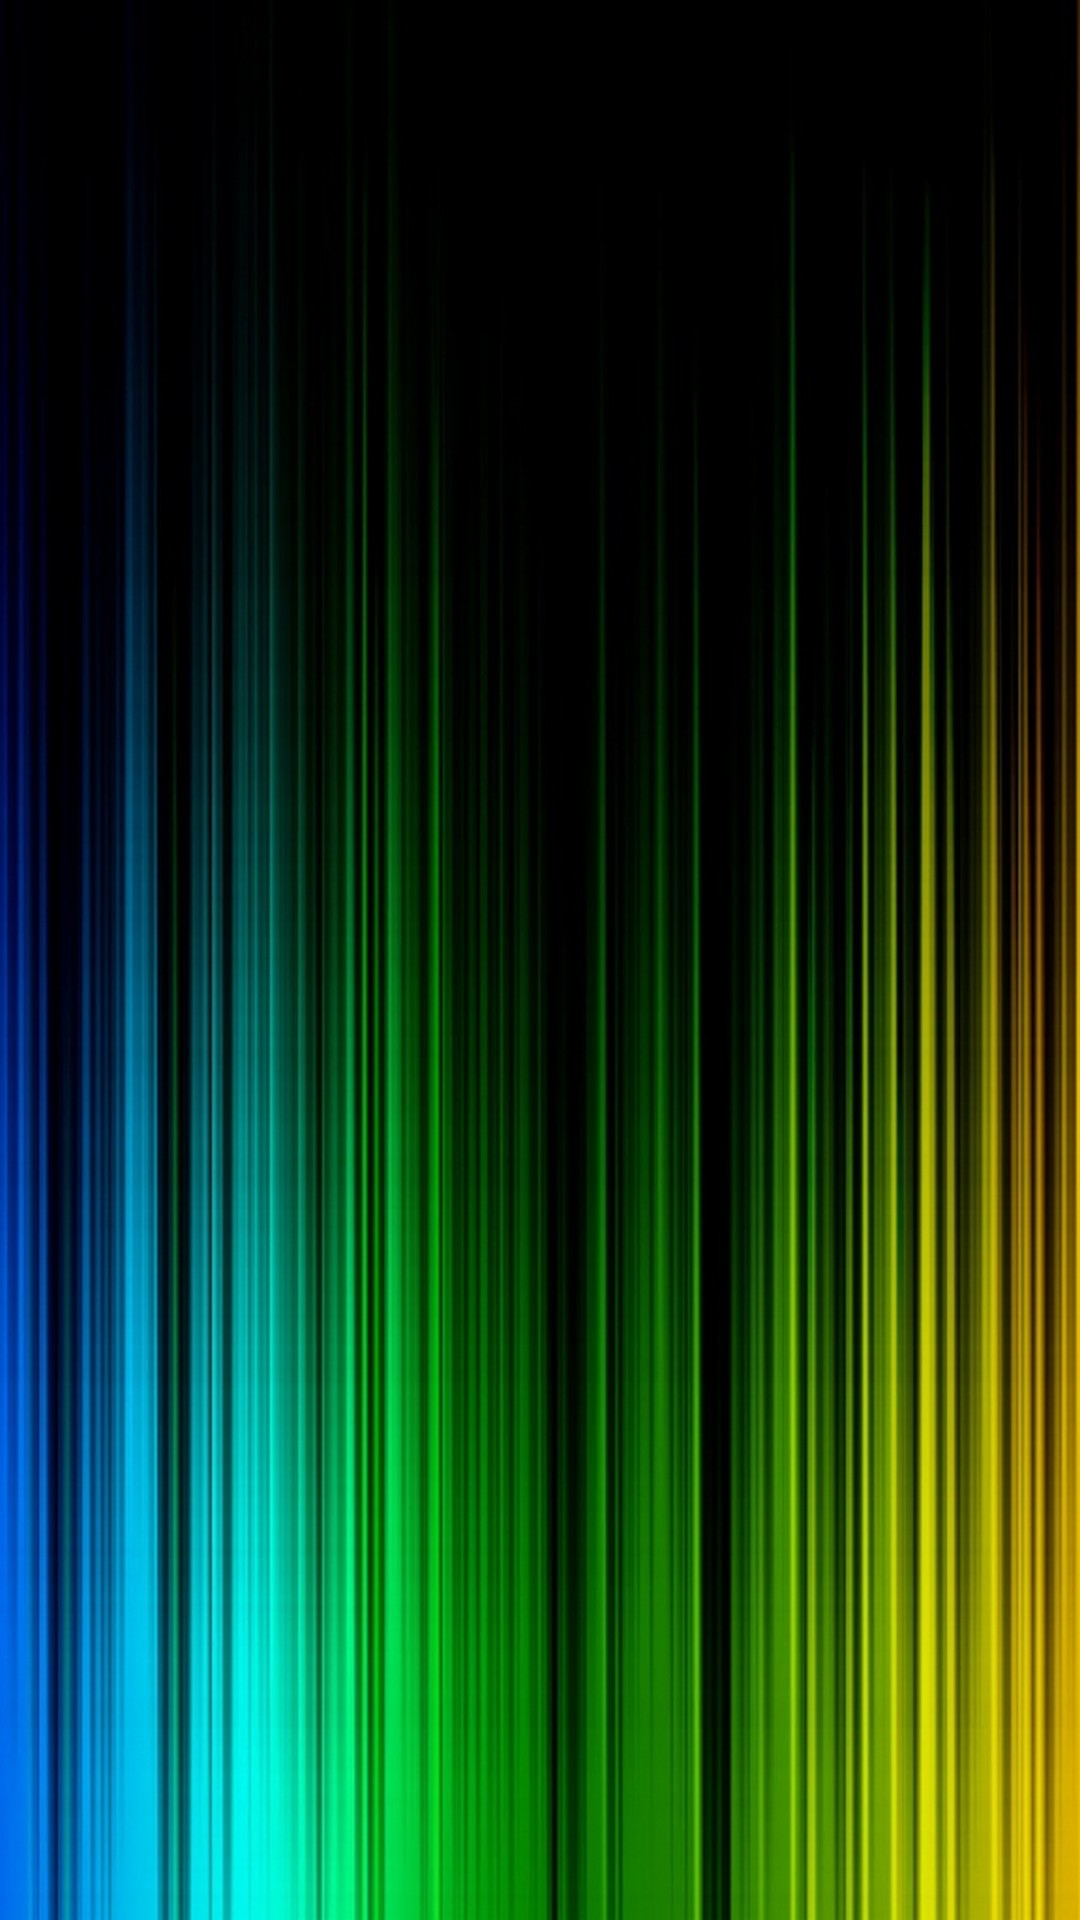 Rainbow Six Siege Wallpaper For Iphone With Image Resolution Rainbow Six Wallpaper Iphone X 1080x19 Wallpaper Teahub Io